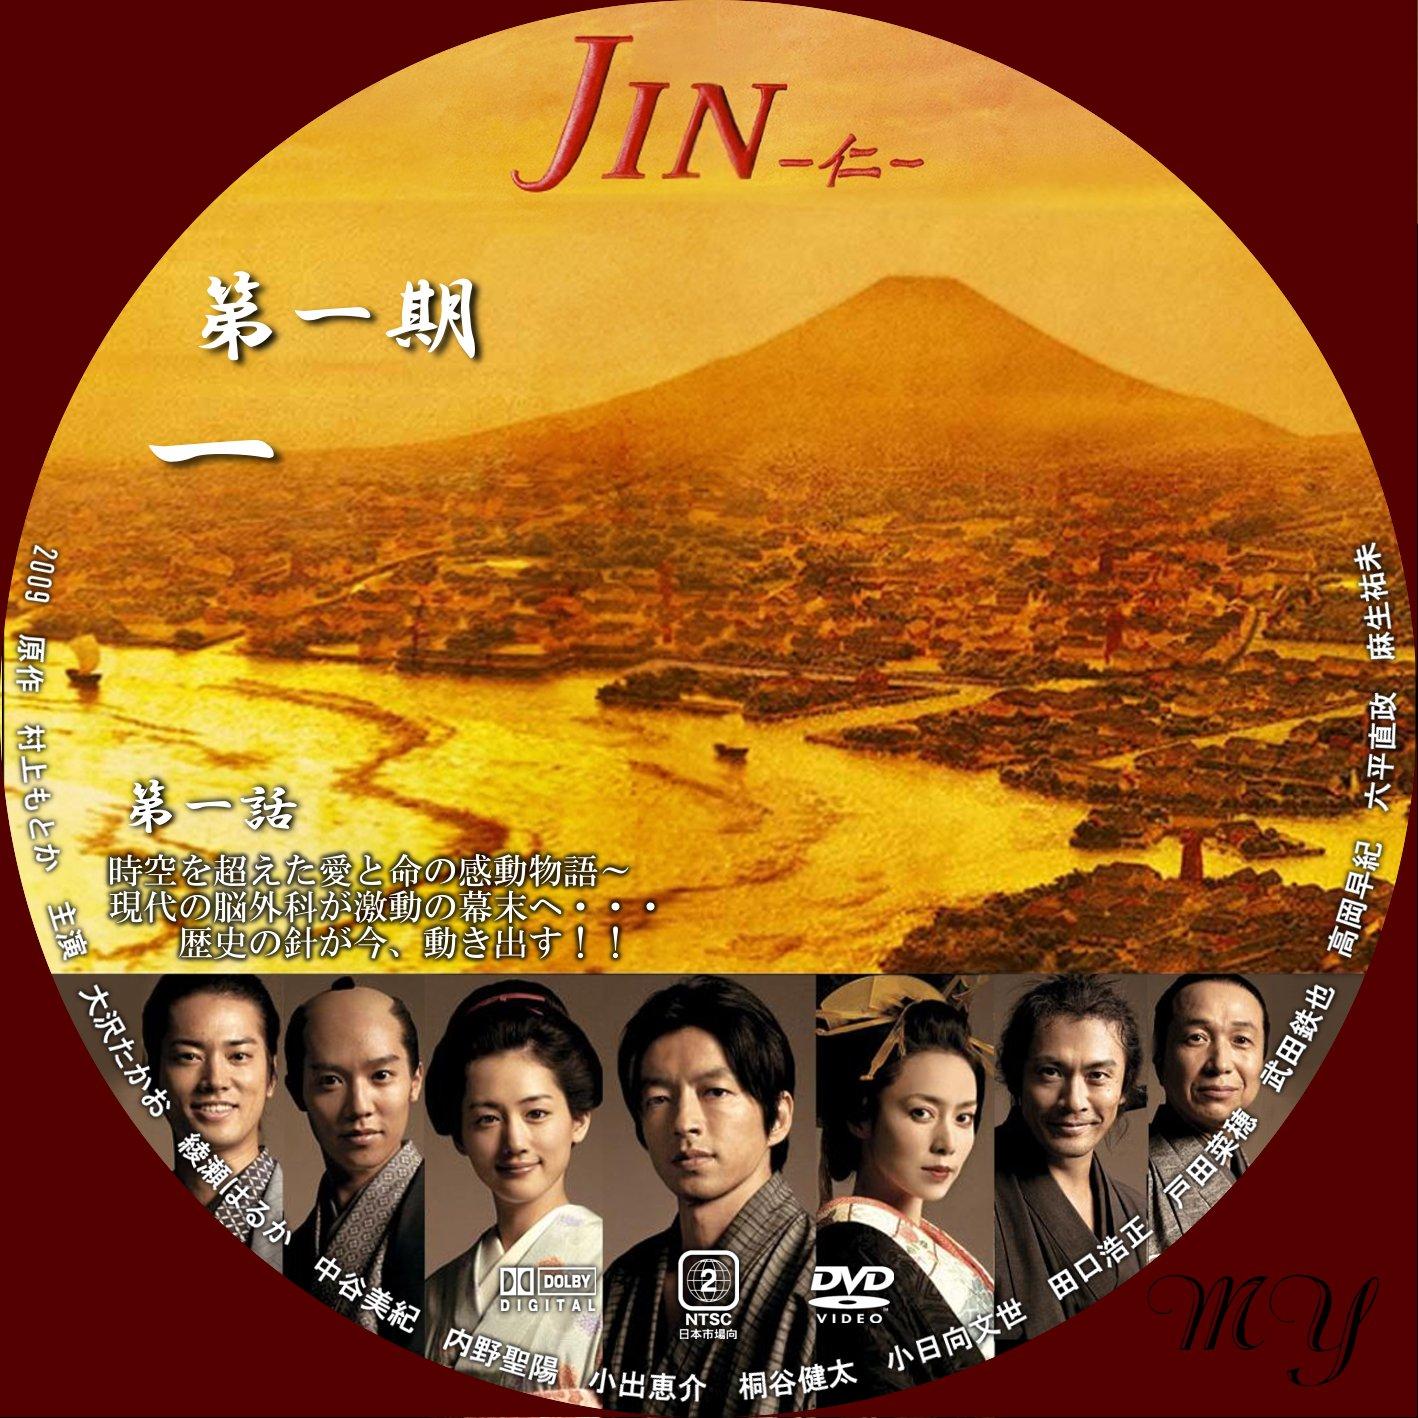 ドラマ JIN ―仁― DVD 全巻セット 大沢たかお www.grupo-syz.com